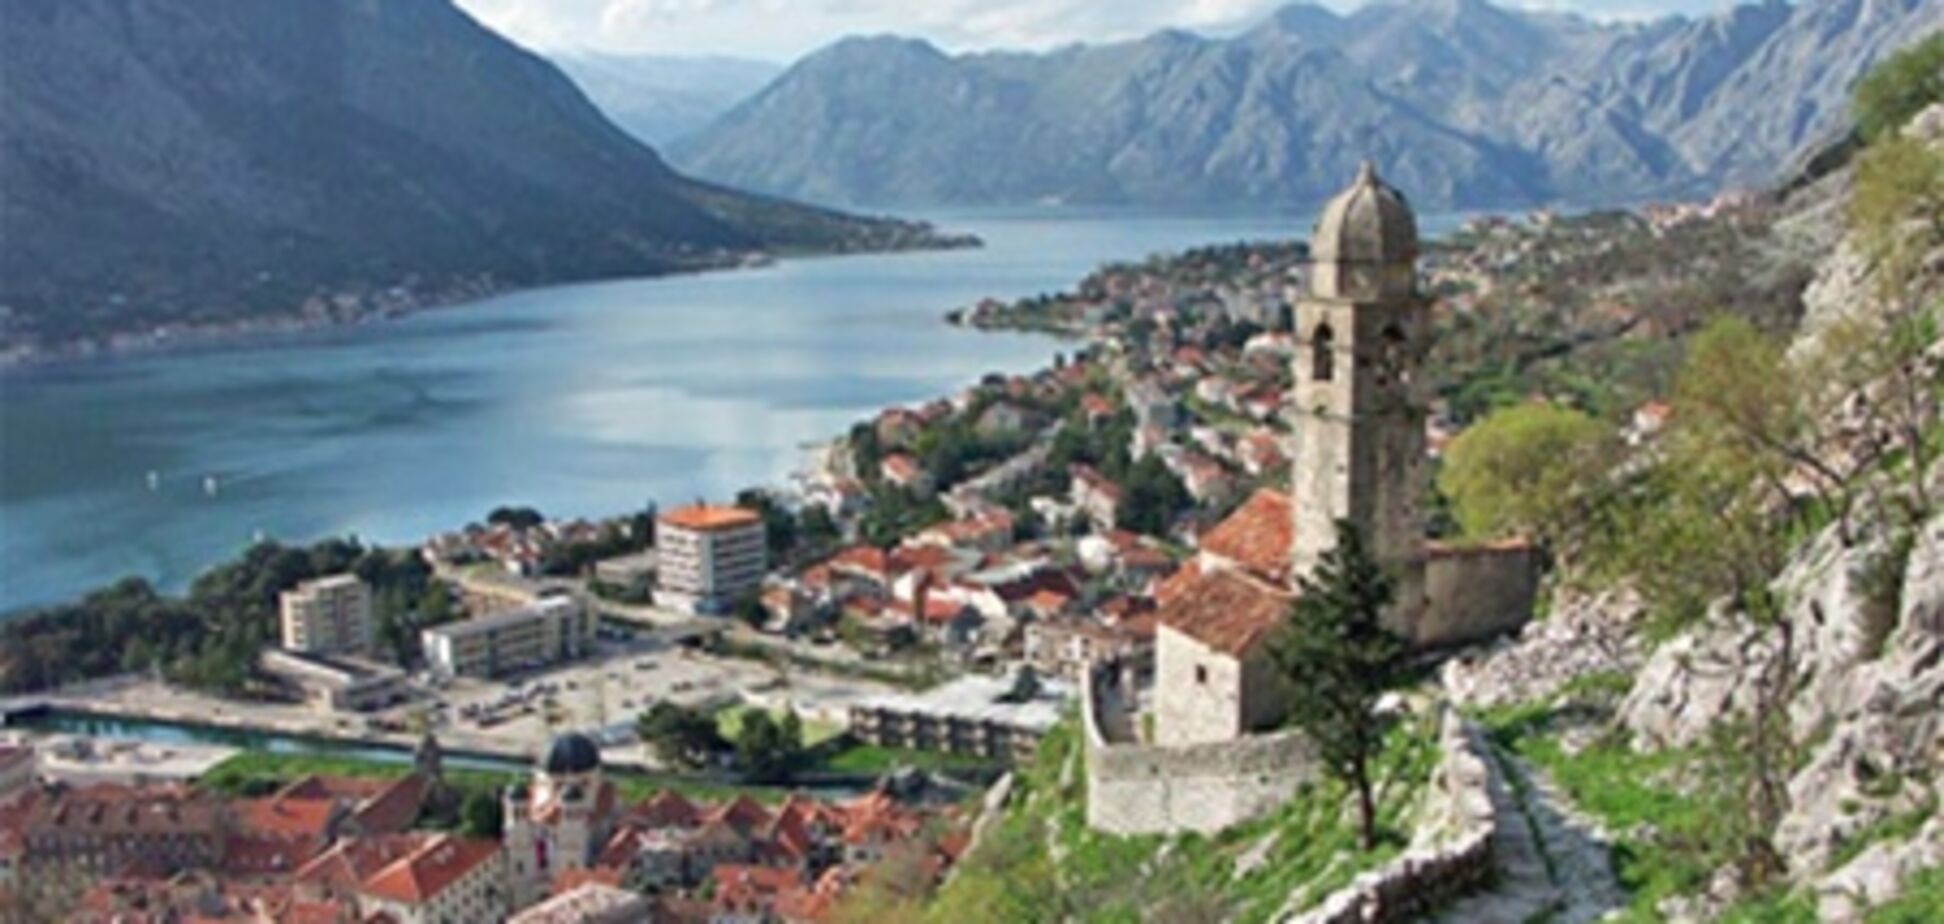 Подгорица - одно из самых посещаемых направлений Черногории